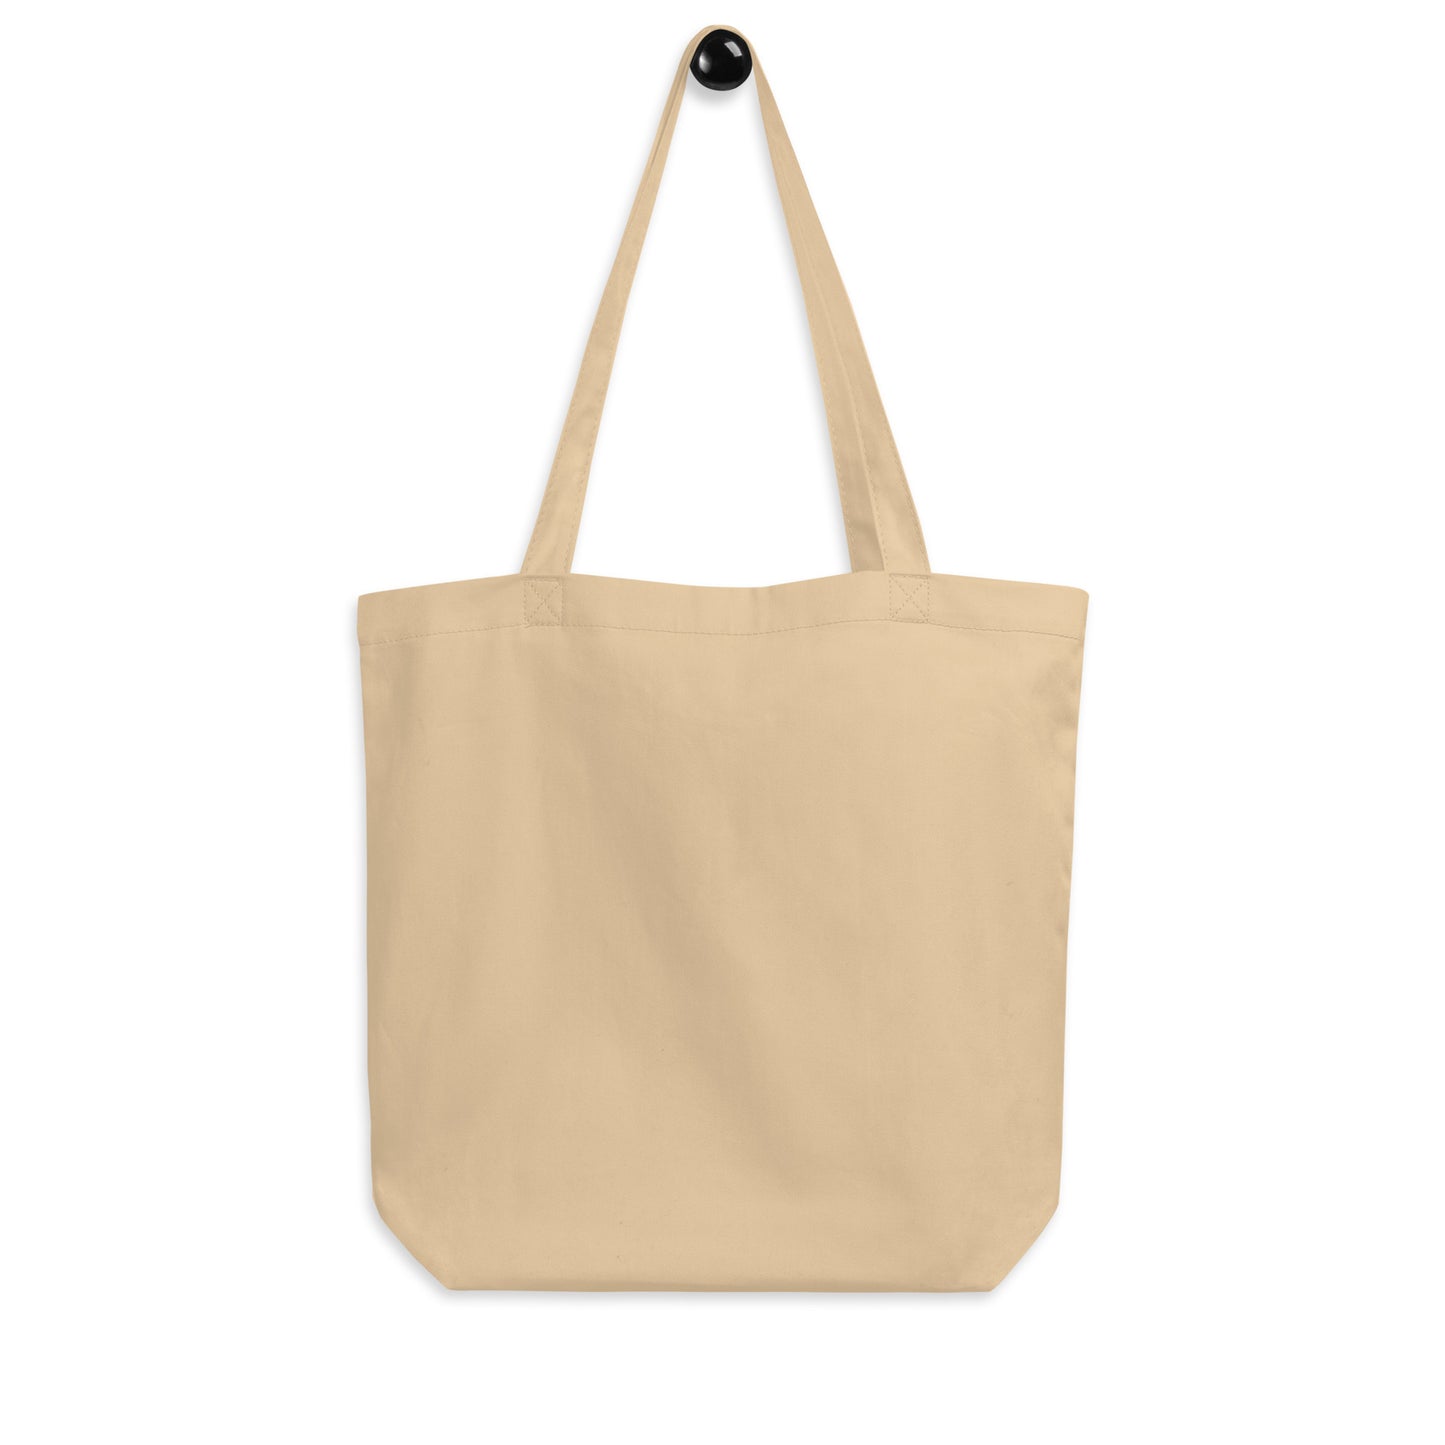 Cool Travel Gift Organic Tote Bag - Viking Blue • YYT St. John's • YHM Designs - Image 05